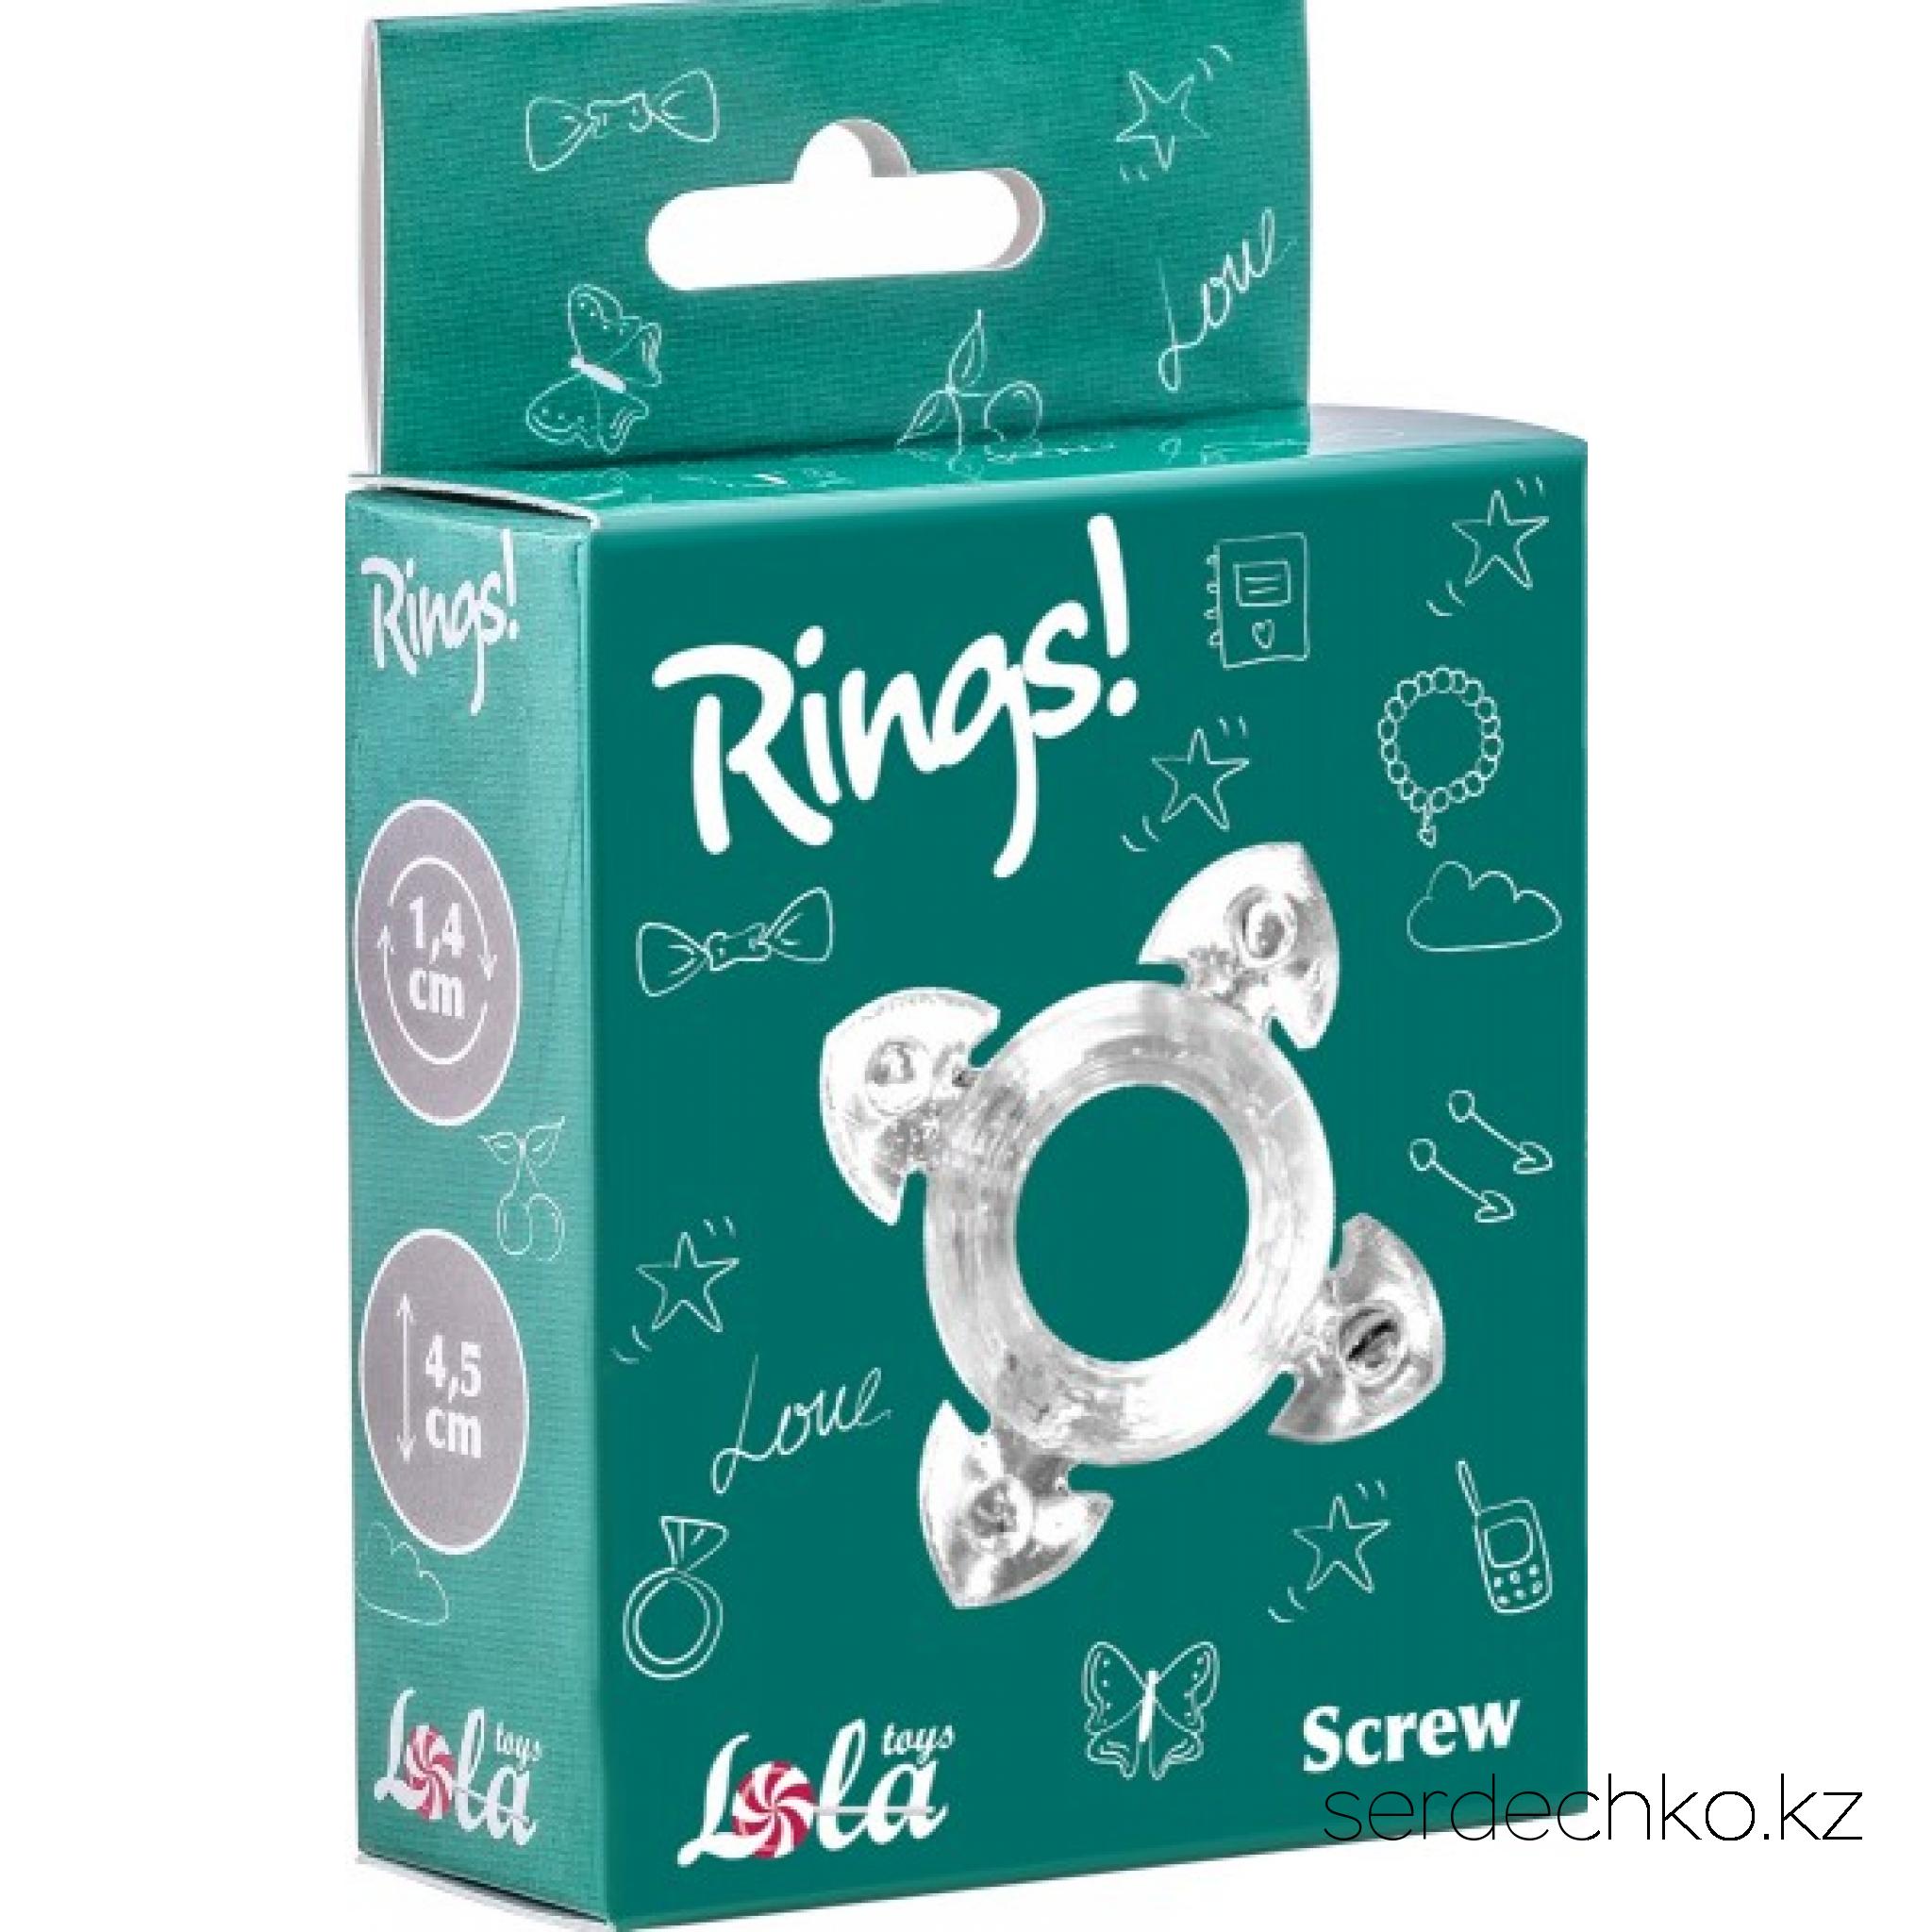 Эрекционное кольцо Rings Screw White, 
	Эрекционное кольцо из серии Rings - игрушка, предназначенная исключительно для мужчин. Эластичный материал позволит крови циркулировать без риска для здоровья, сохраняя и продлевая эрекцию. Рекомендуется использовать с любрикантом на водной основе.
	Характеристики: общая длина - 4,5 см, ширина - 2 см, диаметр - 2,2 см, диаметр отверстия - 1,4 см
